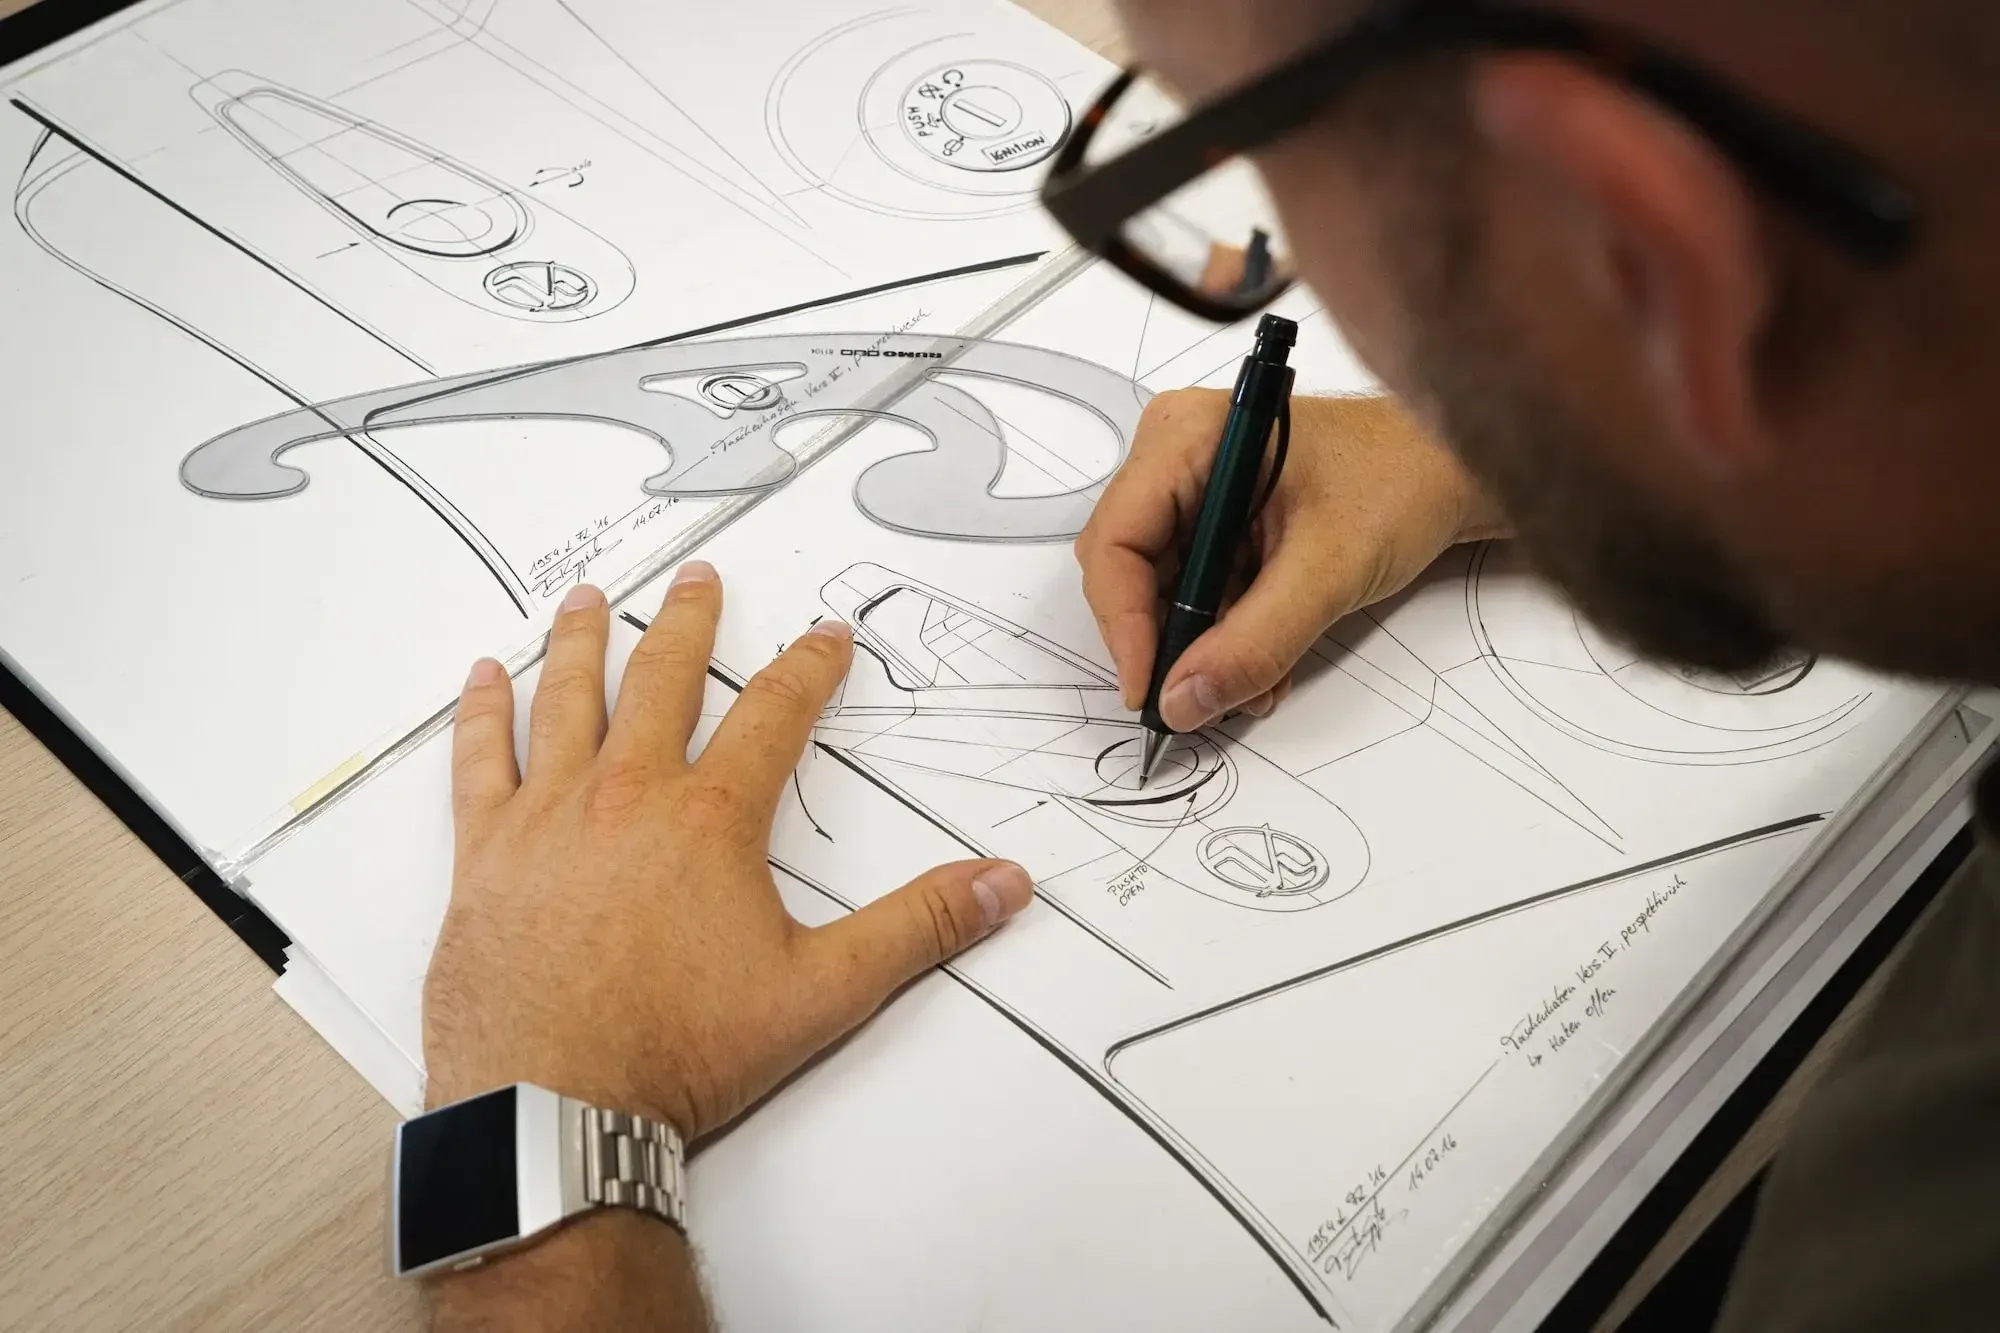 Mann mit silberner Uhr und schwarzer Brille, der Werkzeuge zum Skizzieren eines Produkts benutzt.